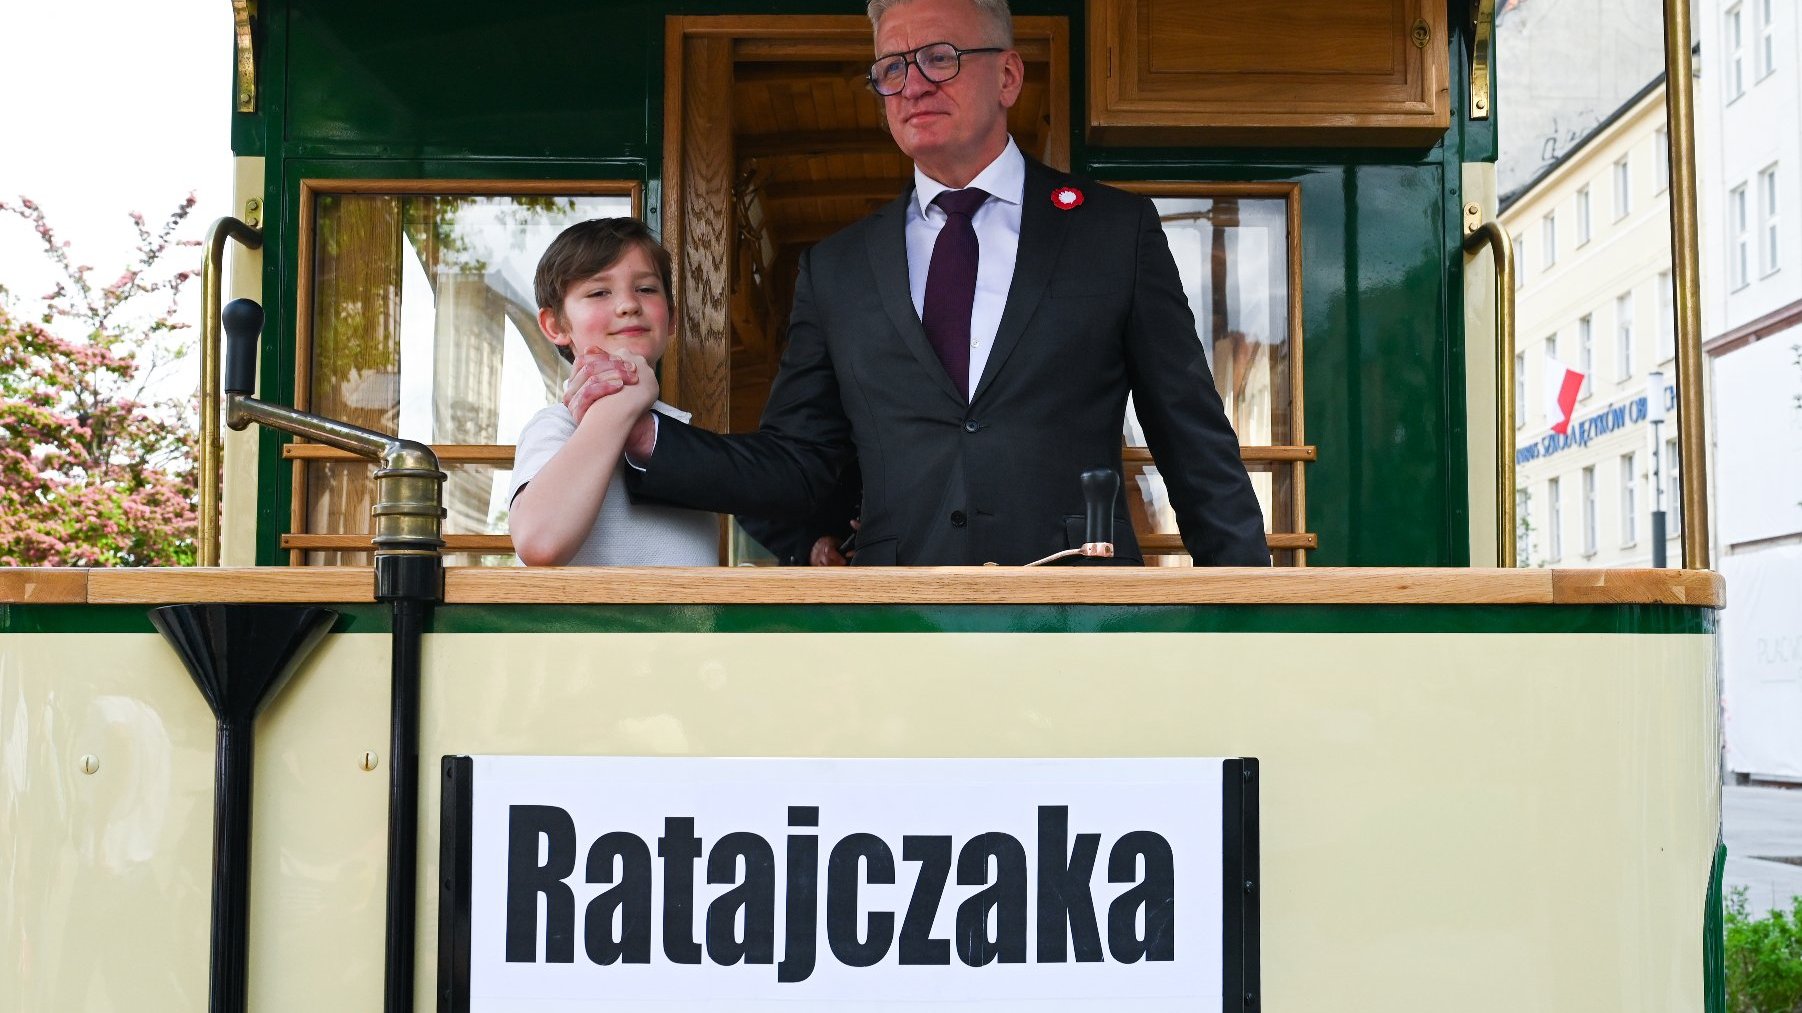 Na zdjęciu prezydent Poznania i mały chłopiec podają sobie ręce